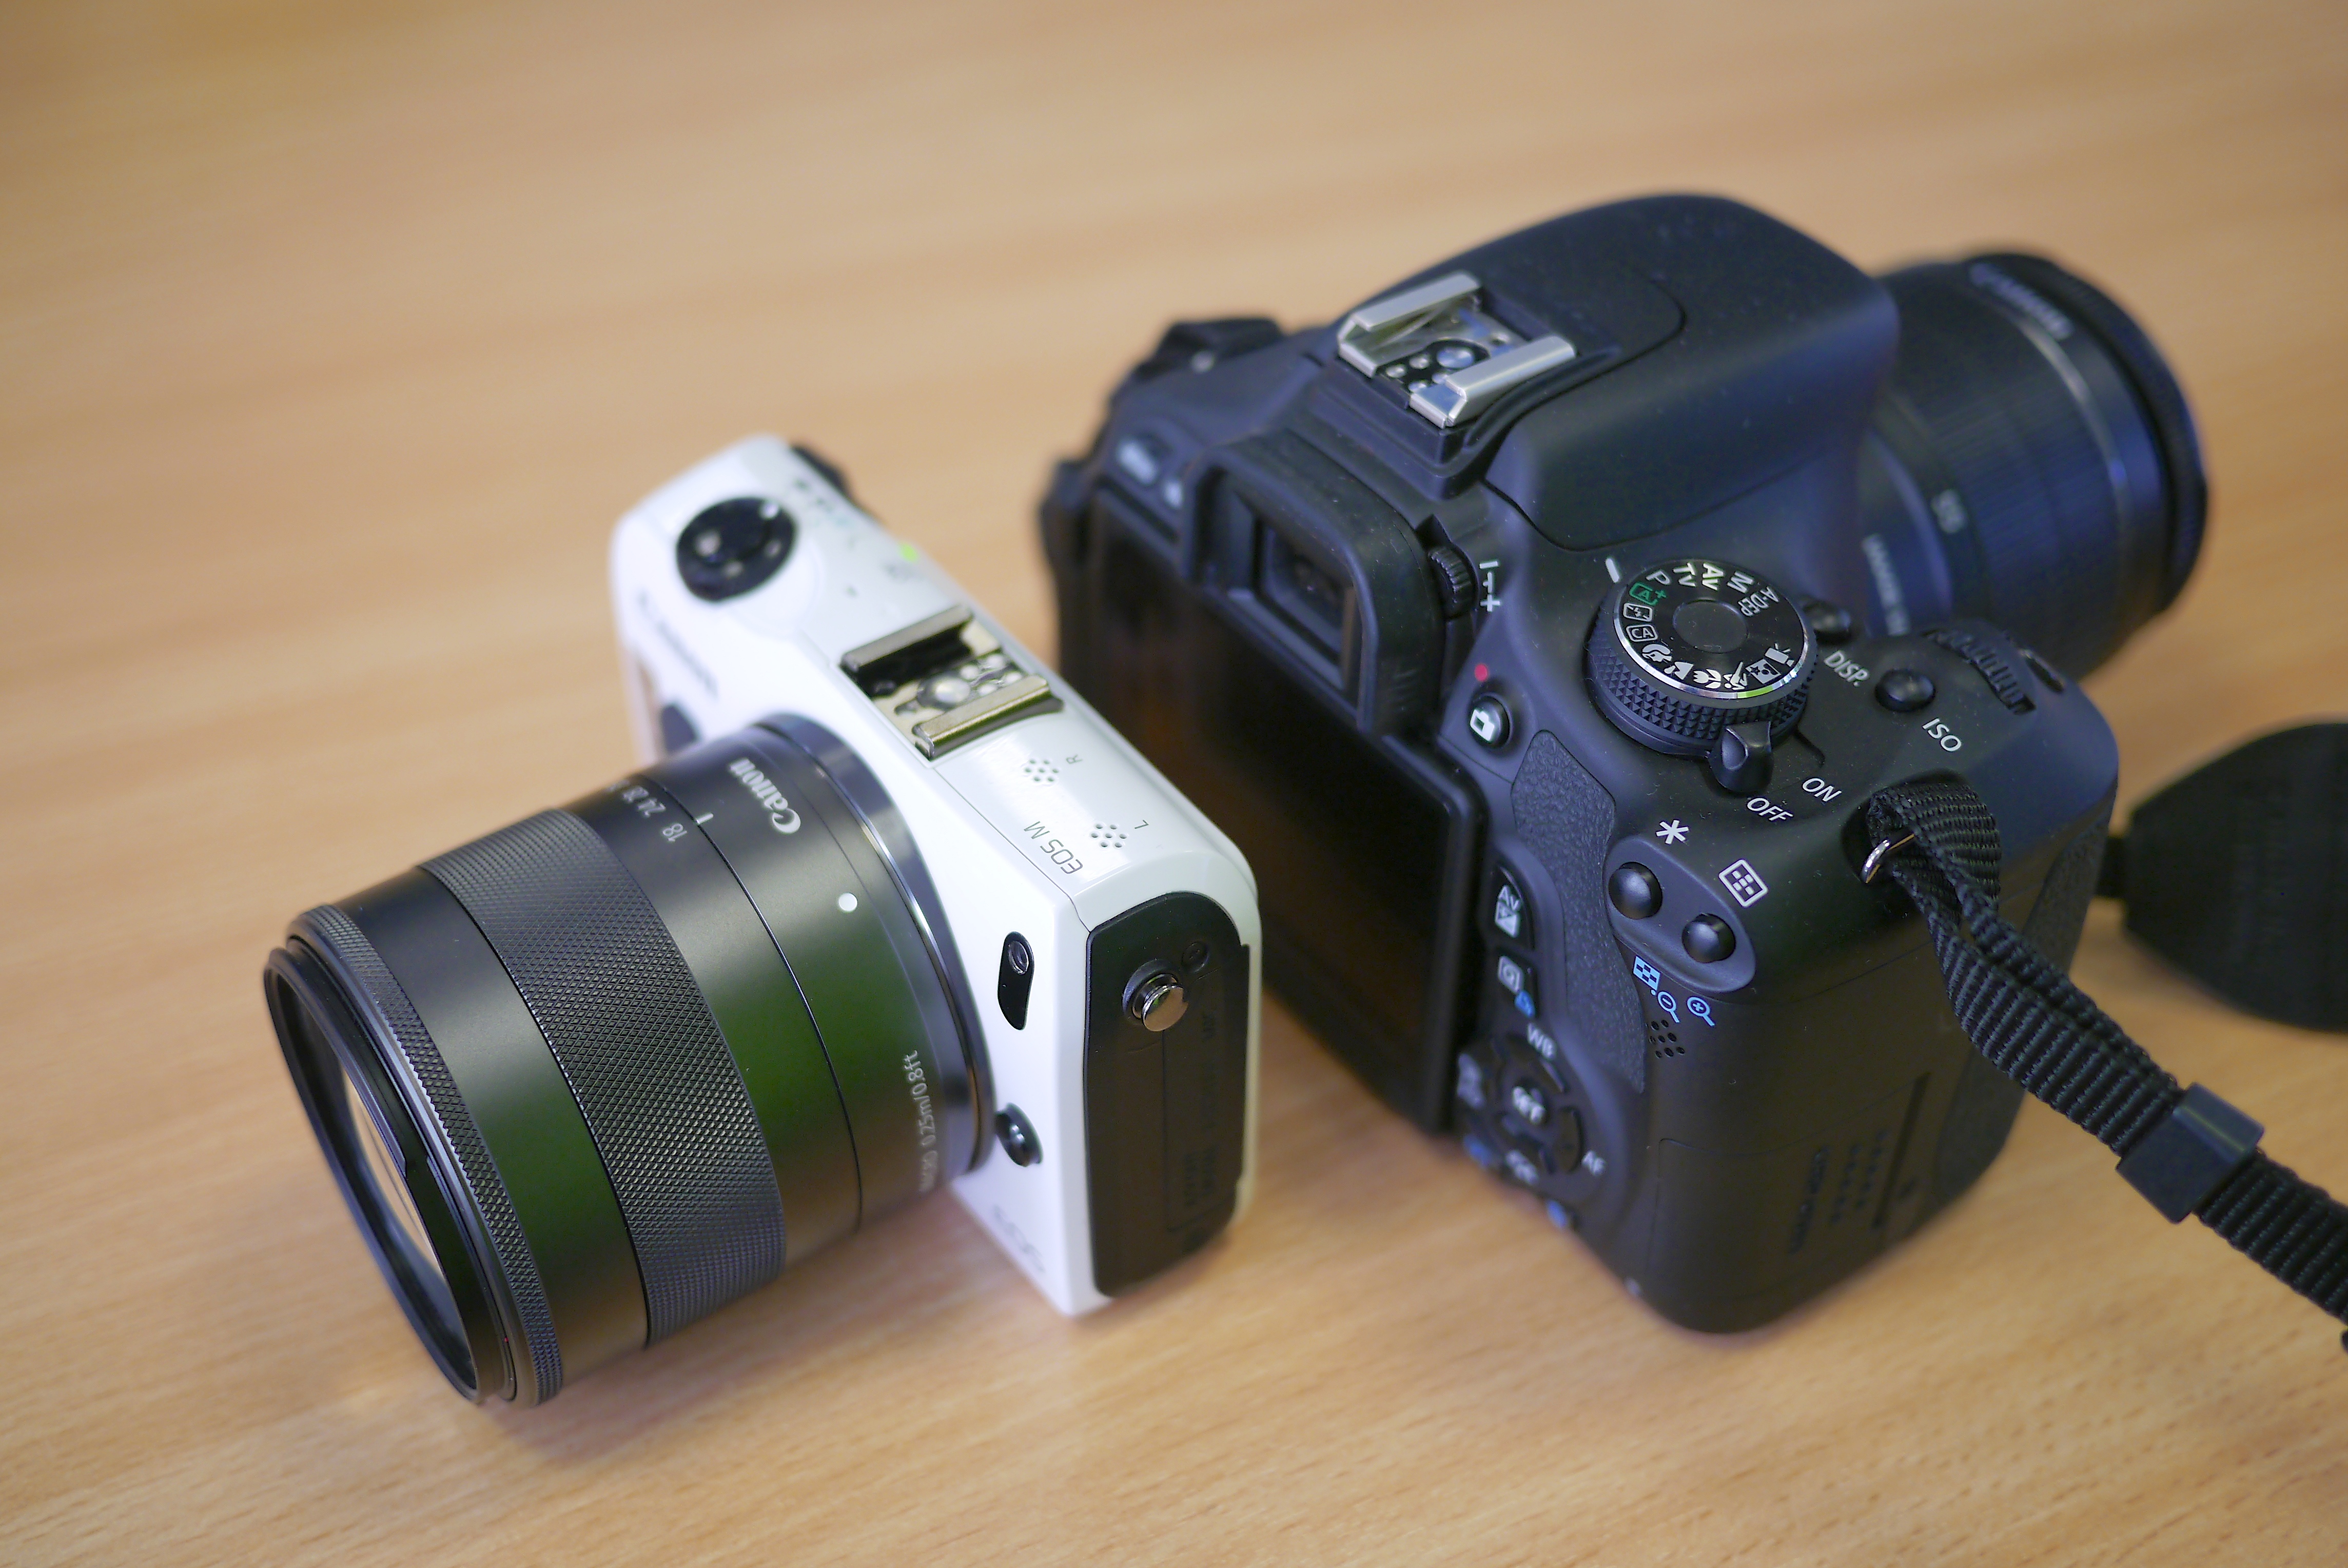 Canon EOS M vs. Canon EOS 600D